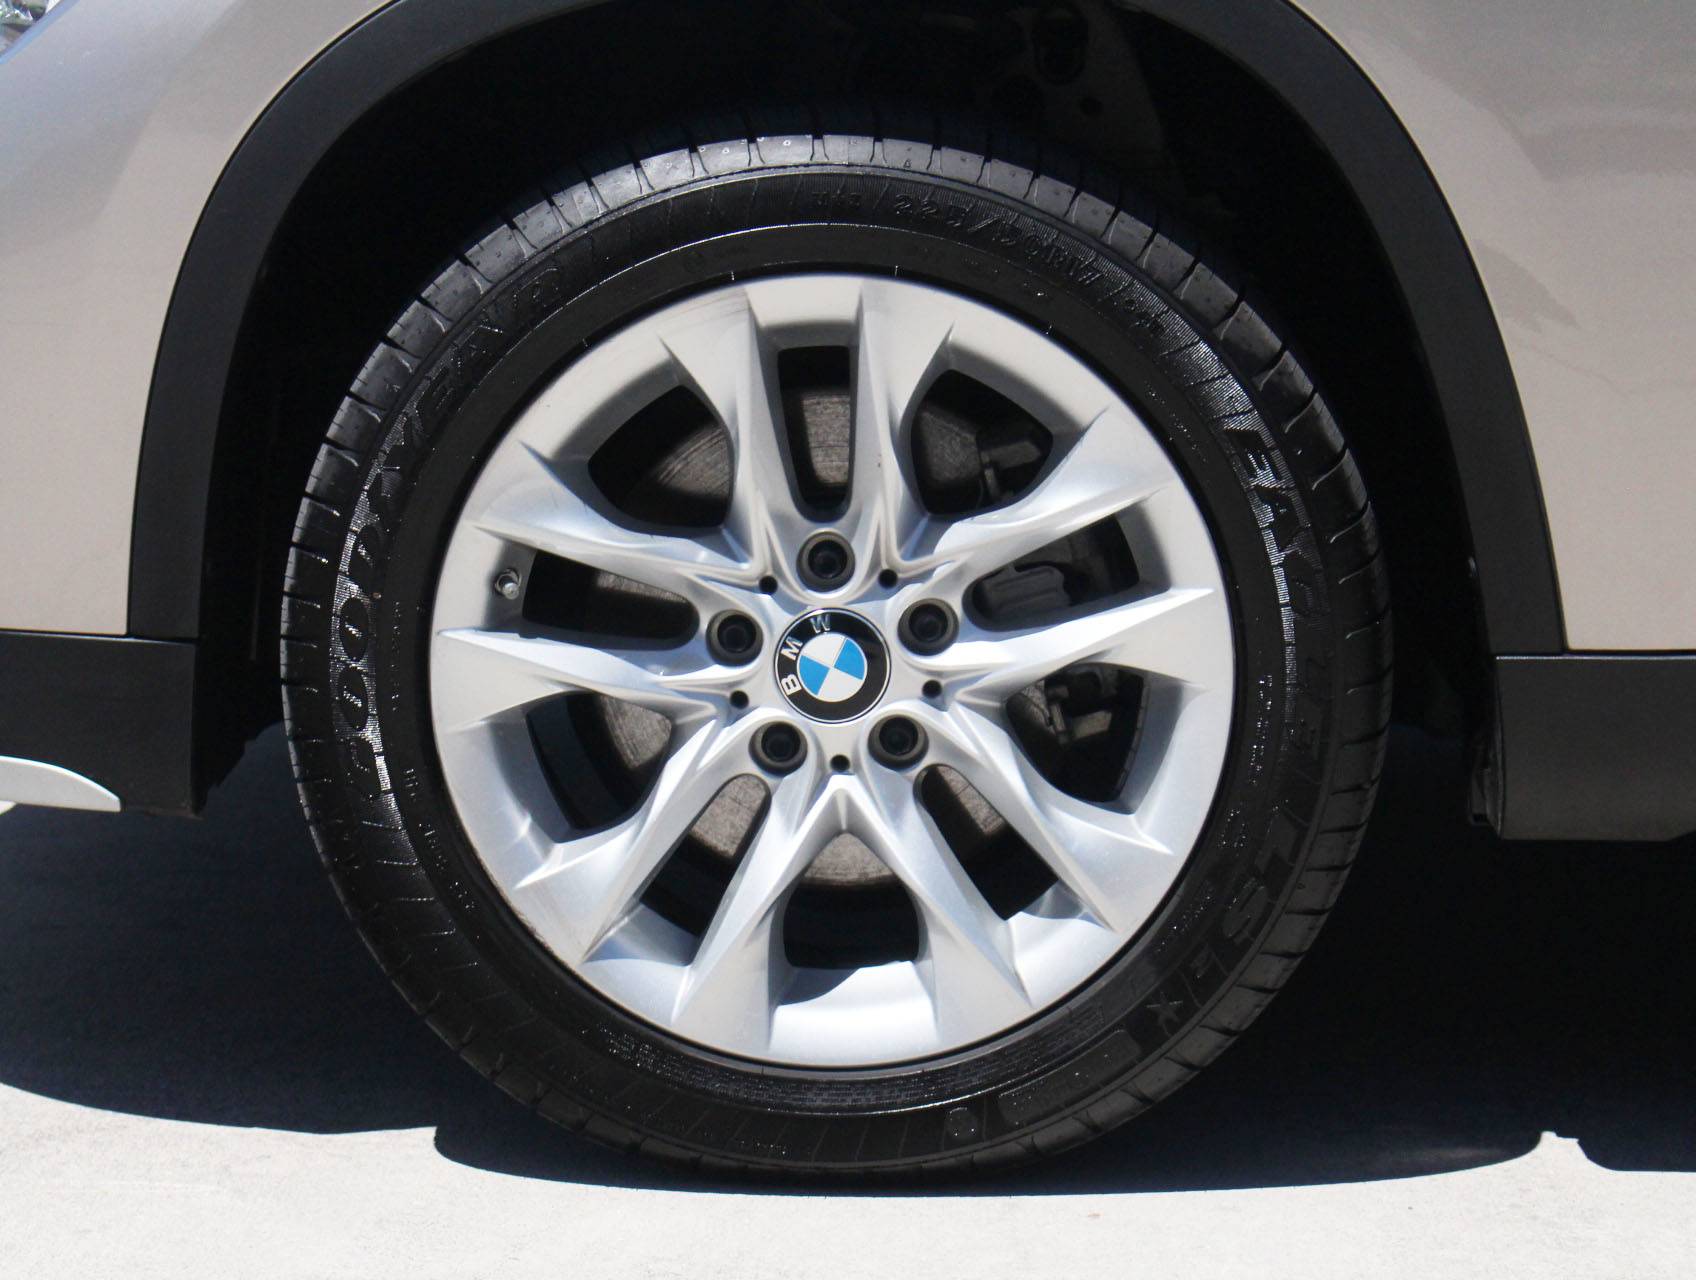 Florida Fine Cars - Used BMW X1 2015 MARGATE XDRIVE28I